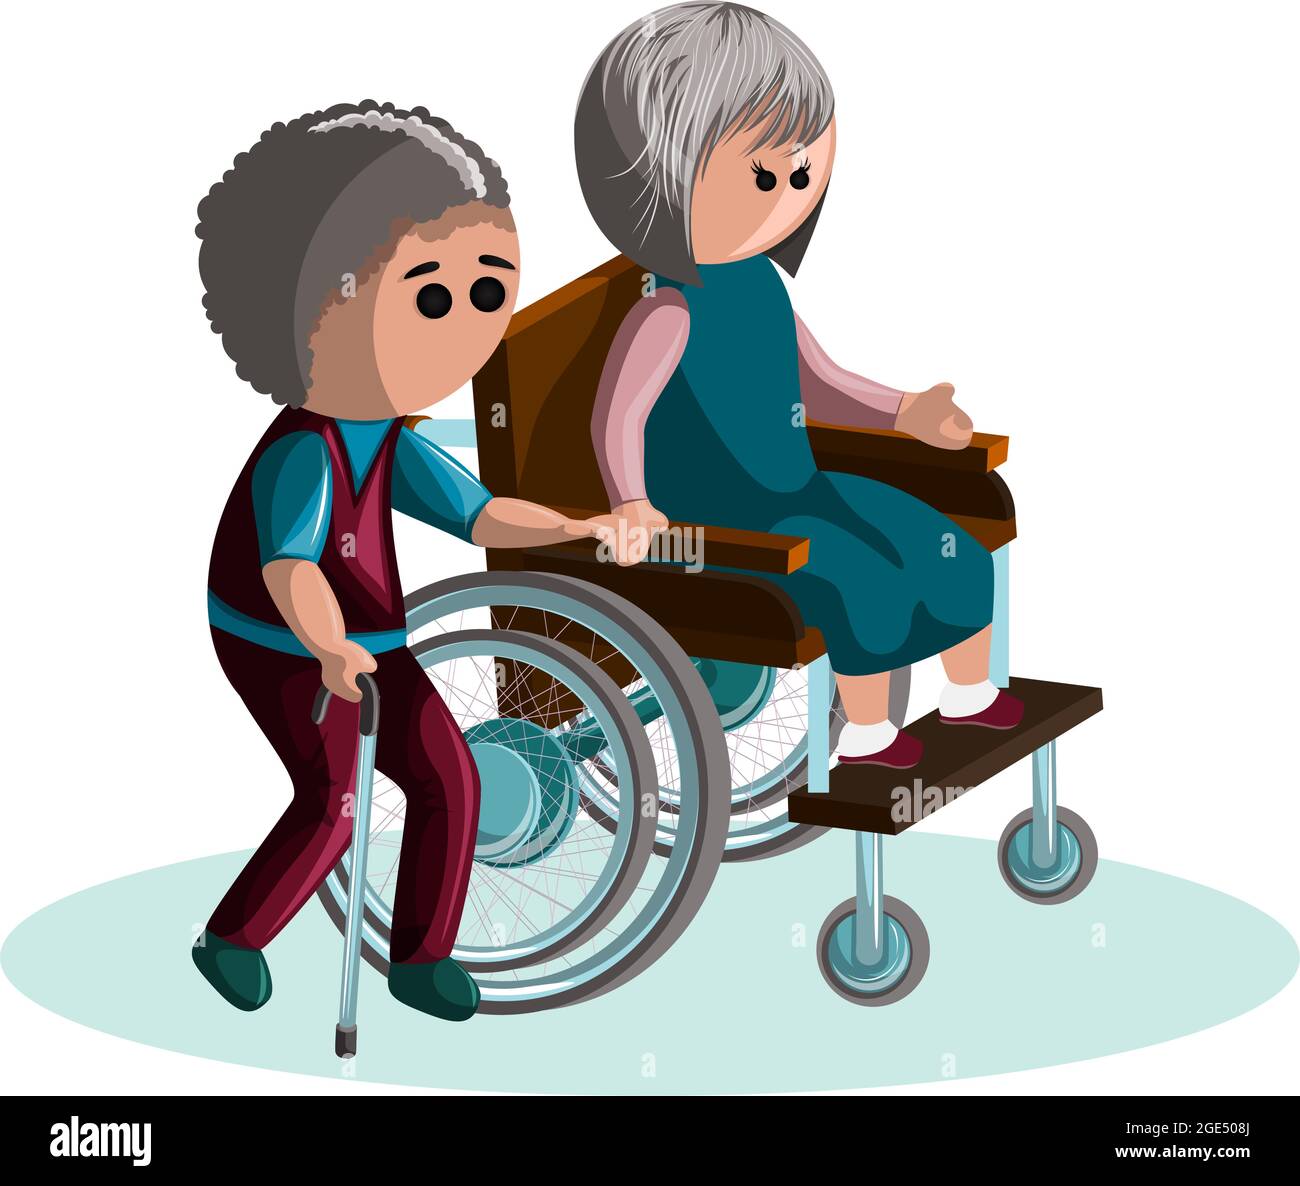 Immagine vettoriale di una coppia anziana con disabilità. EPS 10. Concetto. Immagine su sfondo bianco Illustrazione Vettoriale